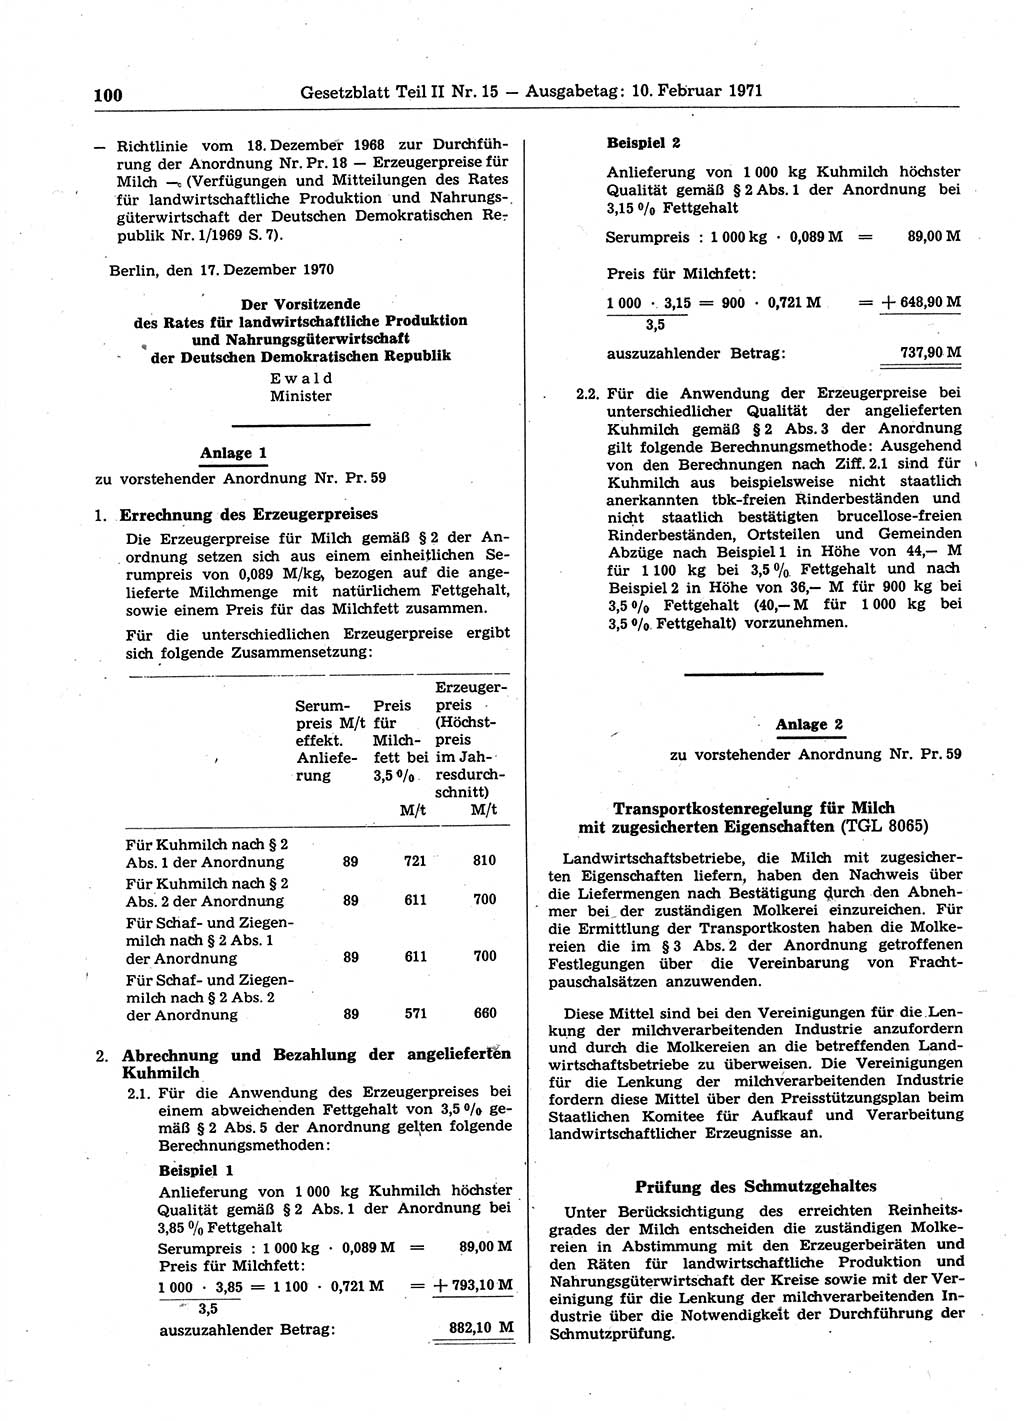 Gesetzblatt (GBl.) der Deutschen Demokratischen Republik (DDR) Teil ⅠⅠ 1971, Seite 100 (GBl. DDR ⅠⅠ 1971, S. 100)